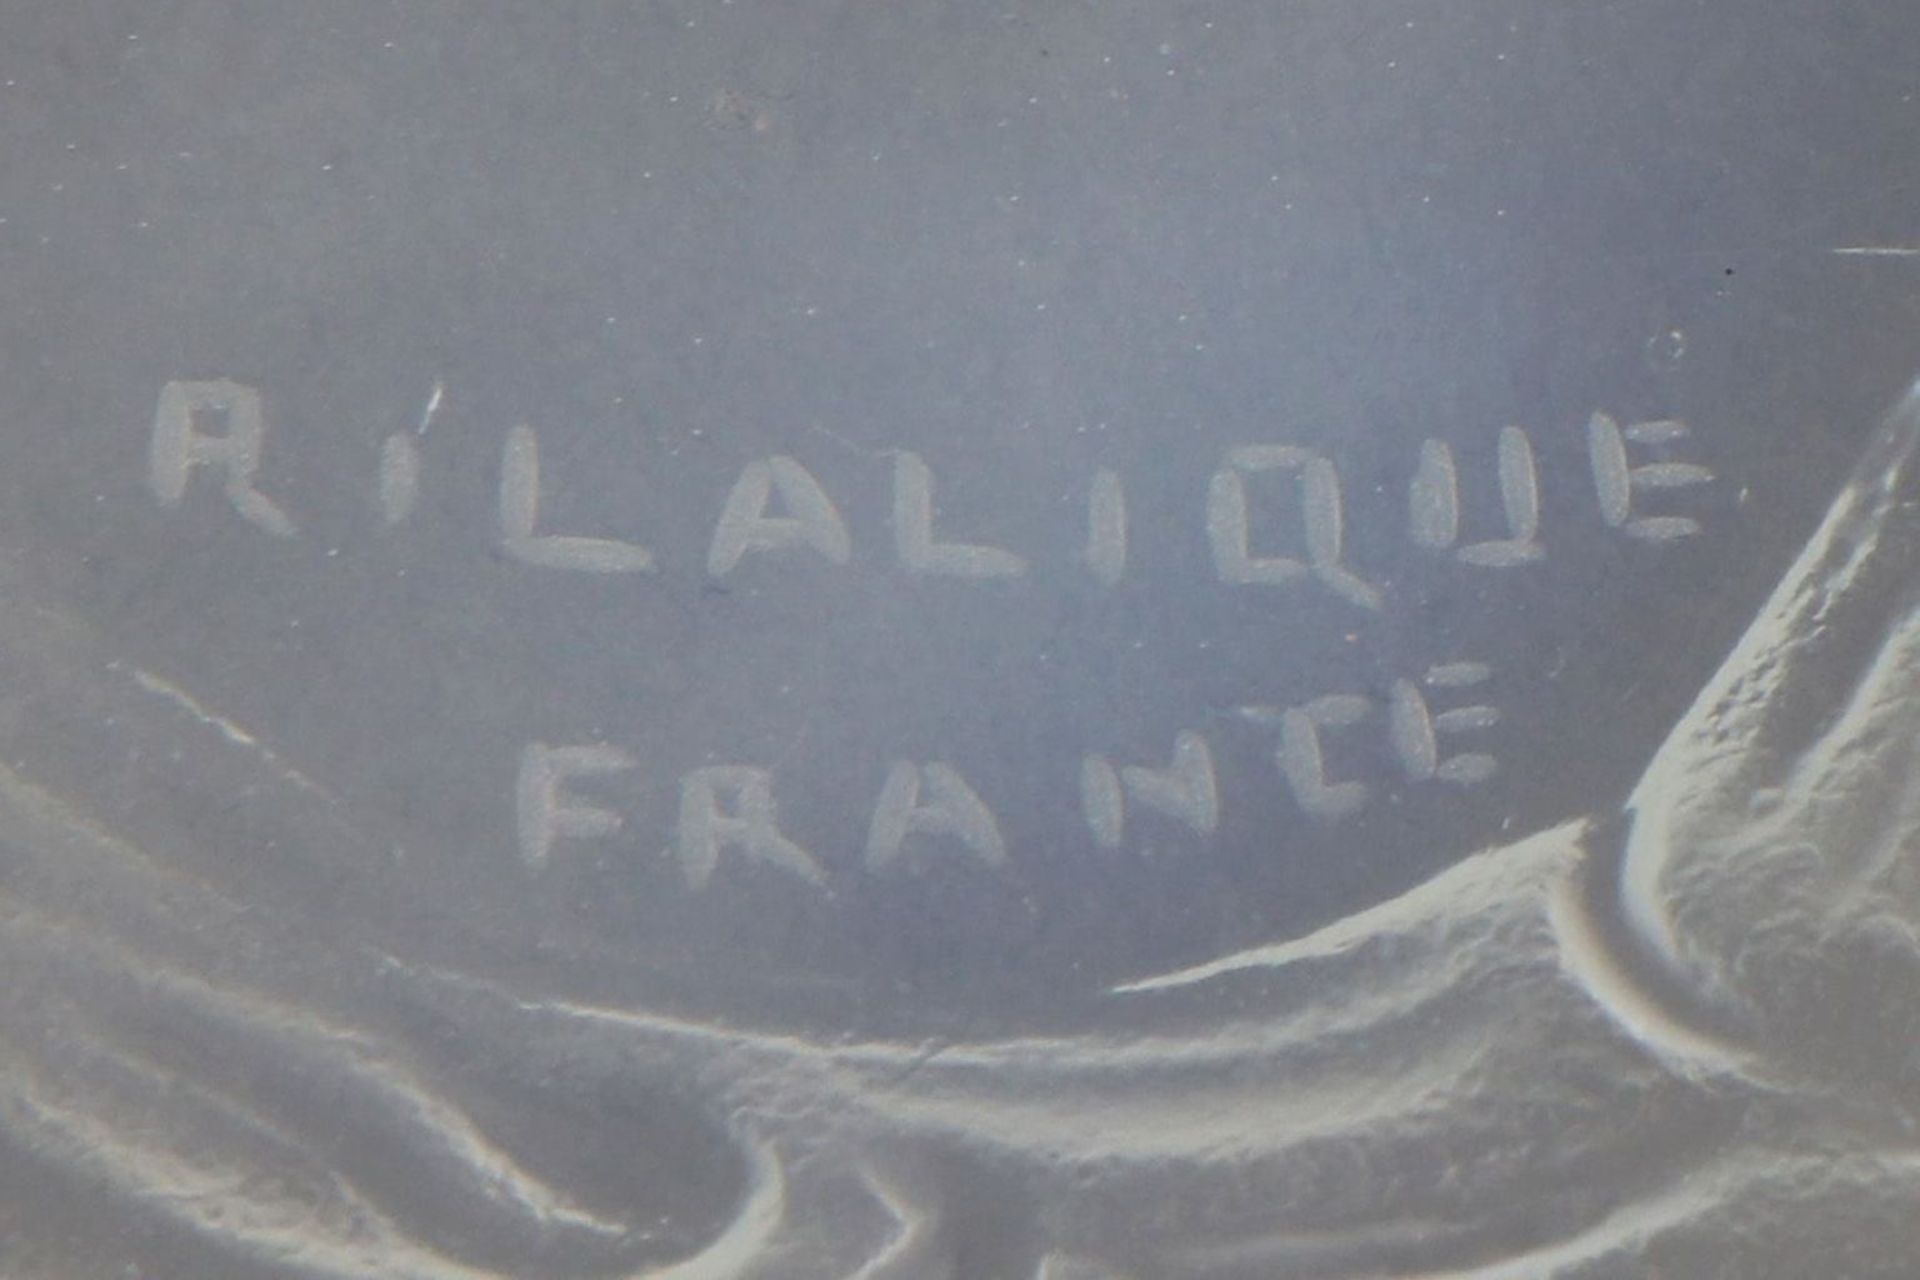 RENÉ LALIQUE (1860-1945) Glasschale ¨Misteln¨ - Image 3 of 3